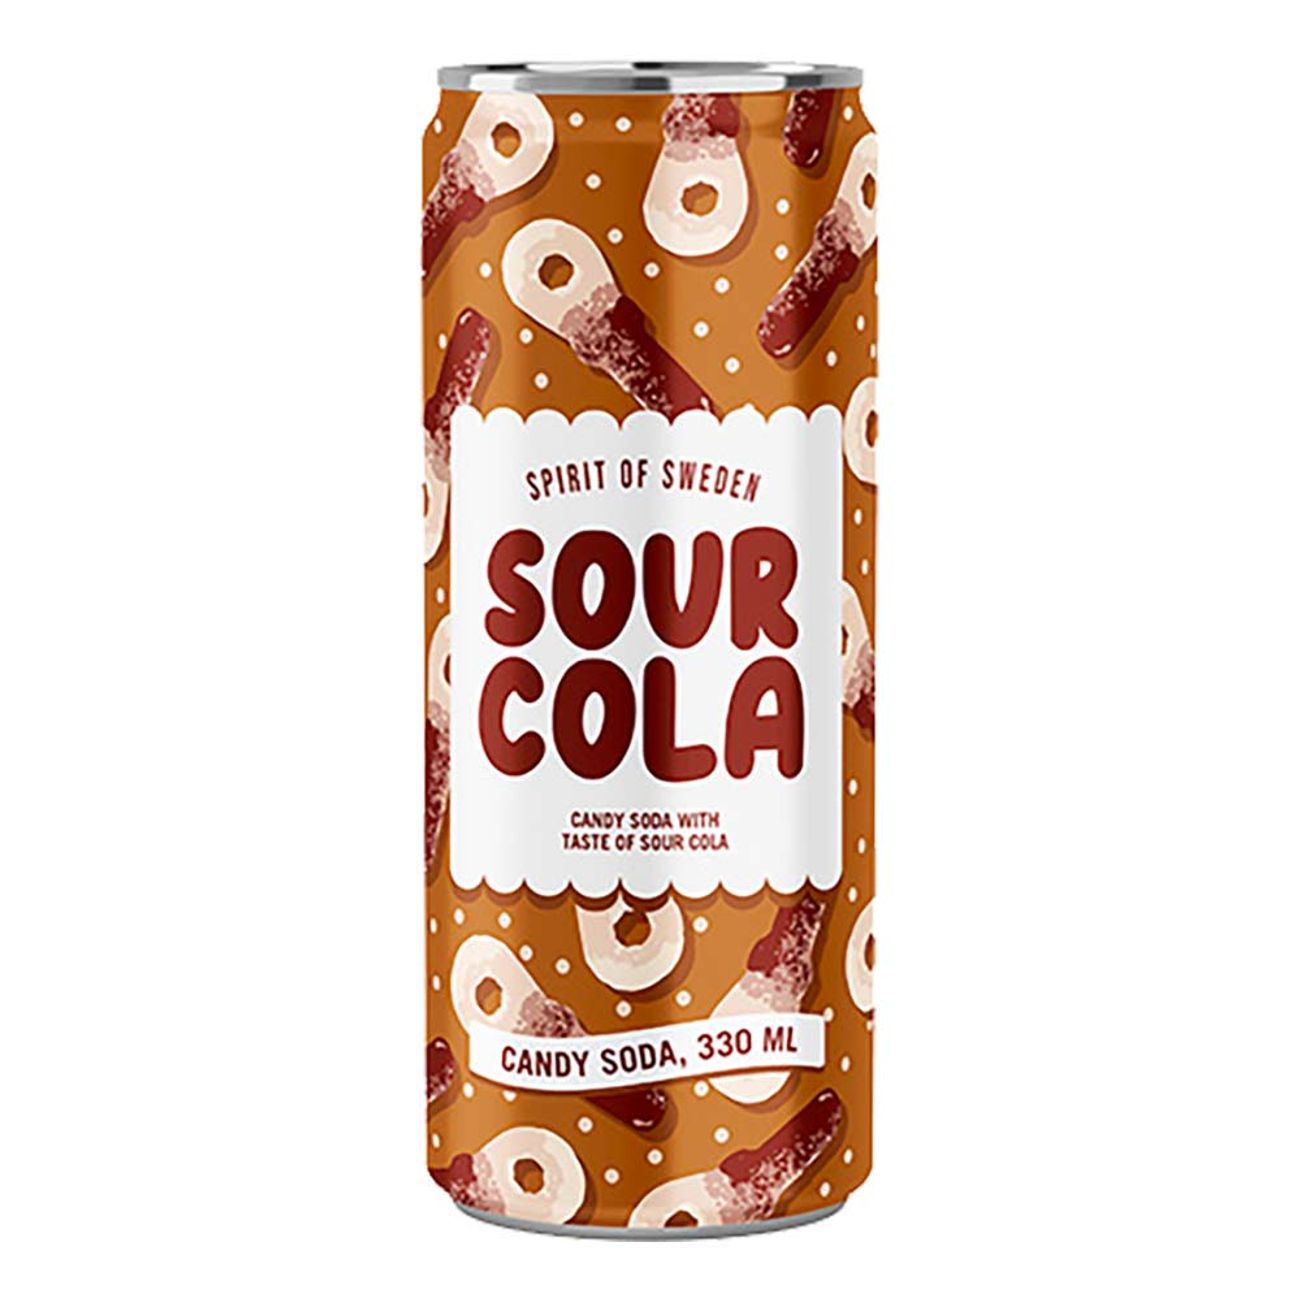 spirit-of-sweden-sour-cola-94887-1